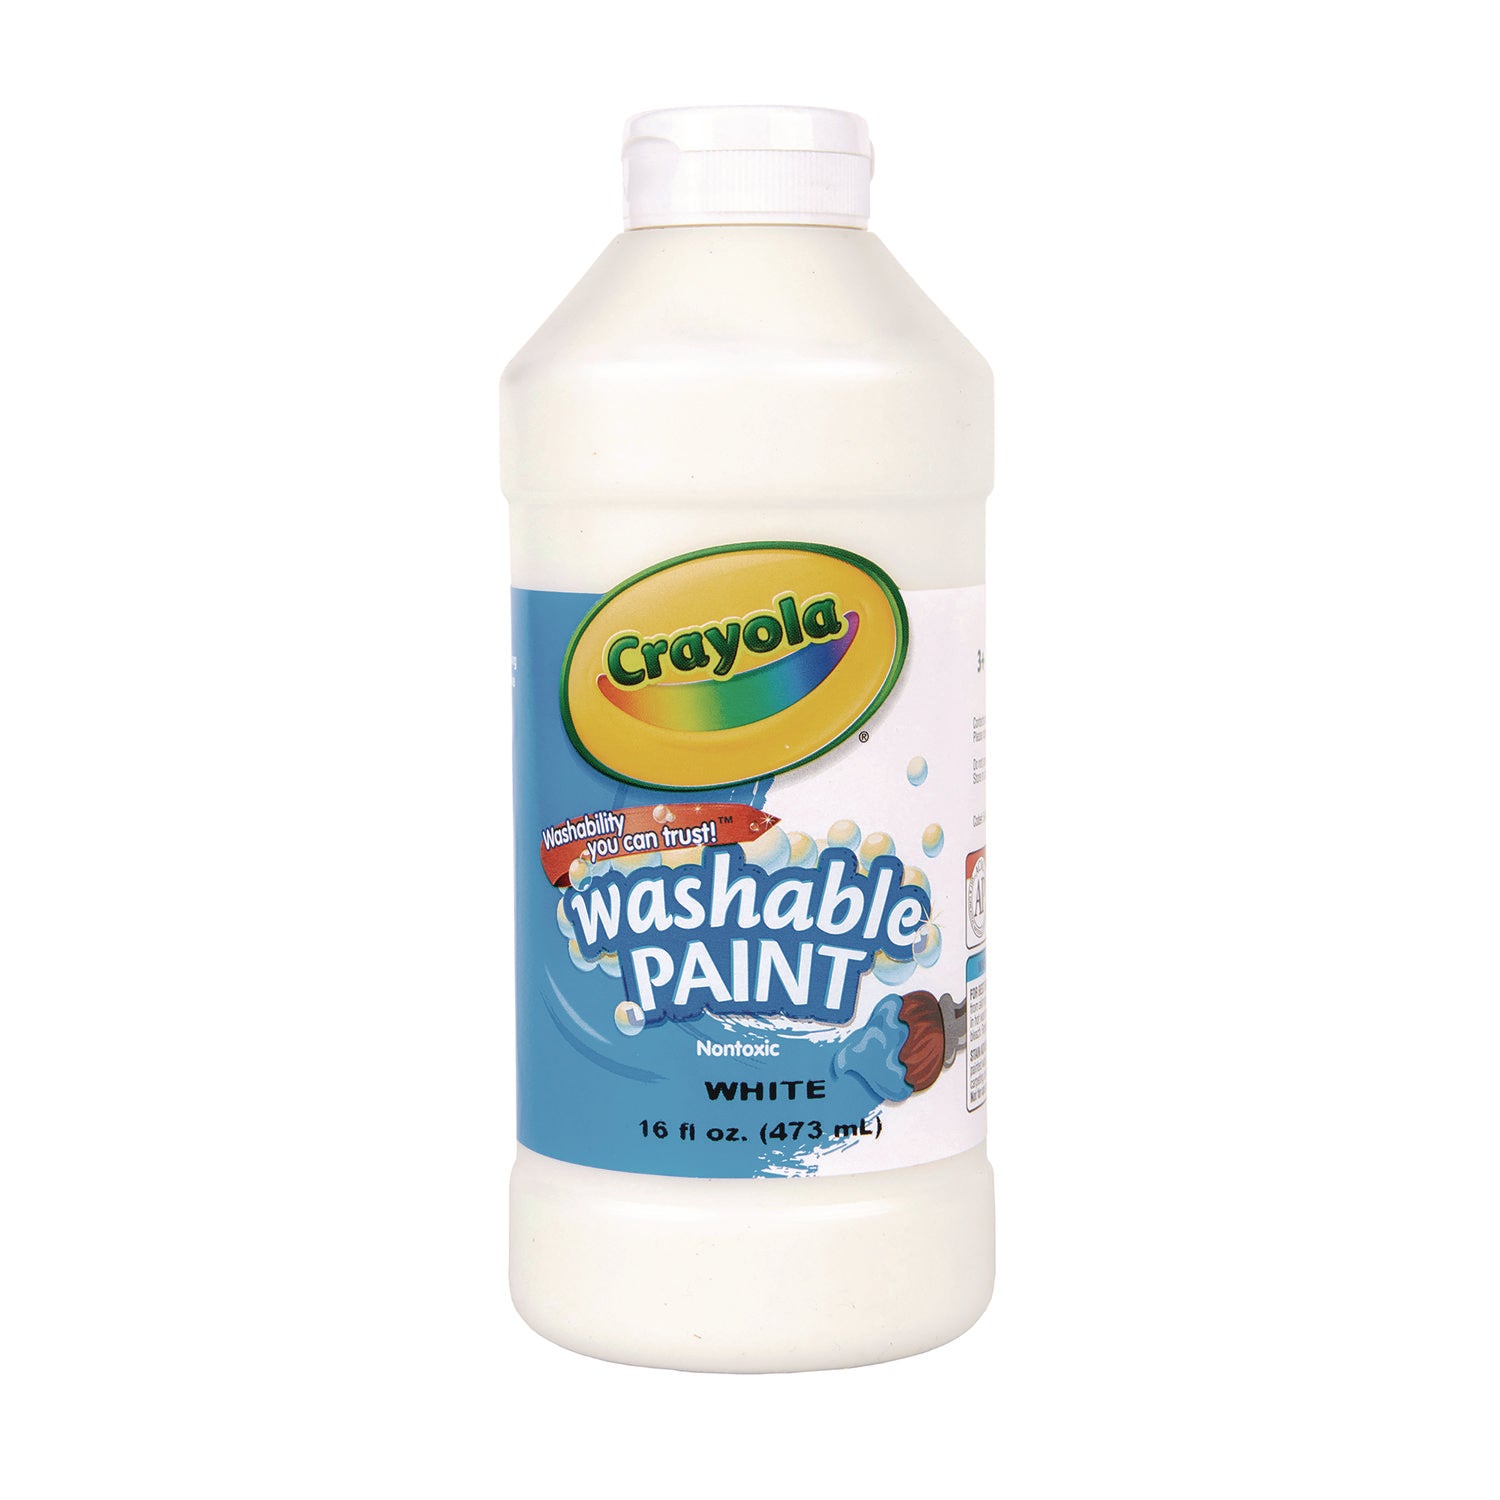 Washable Paint, White, 16 oz Bottle - 